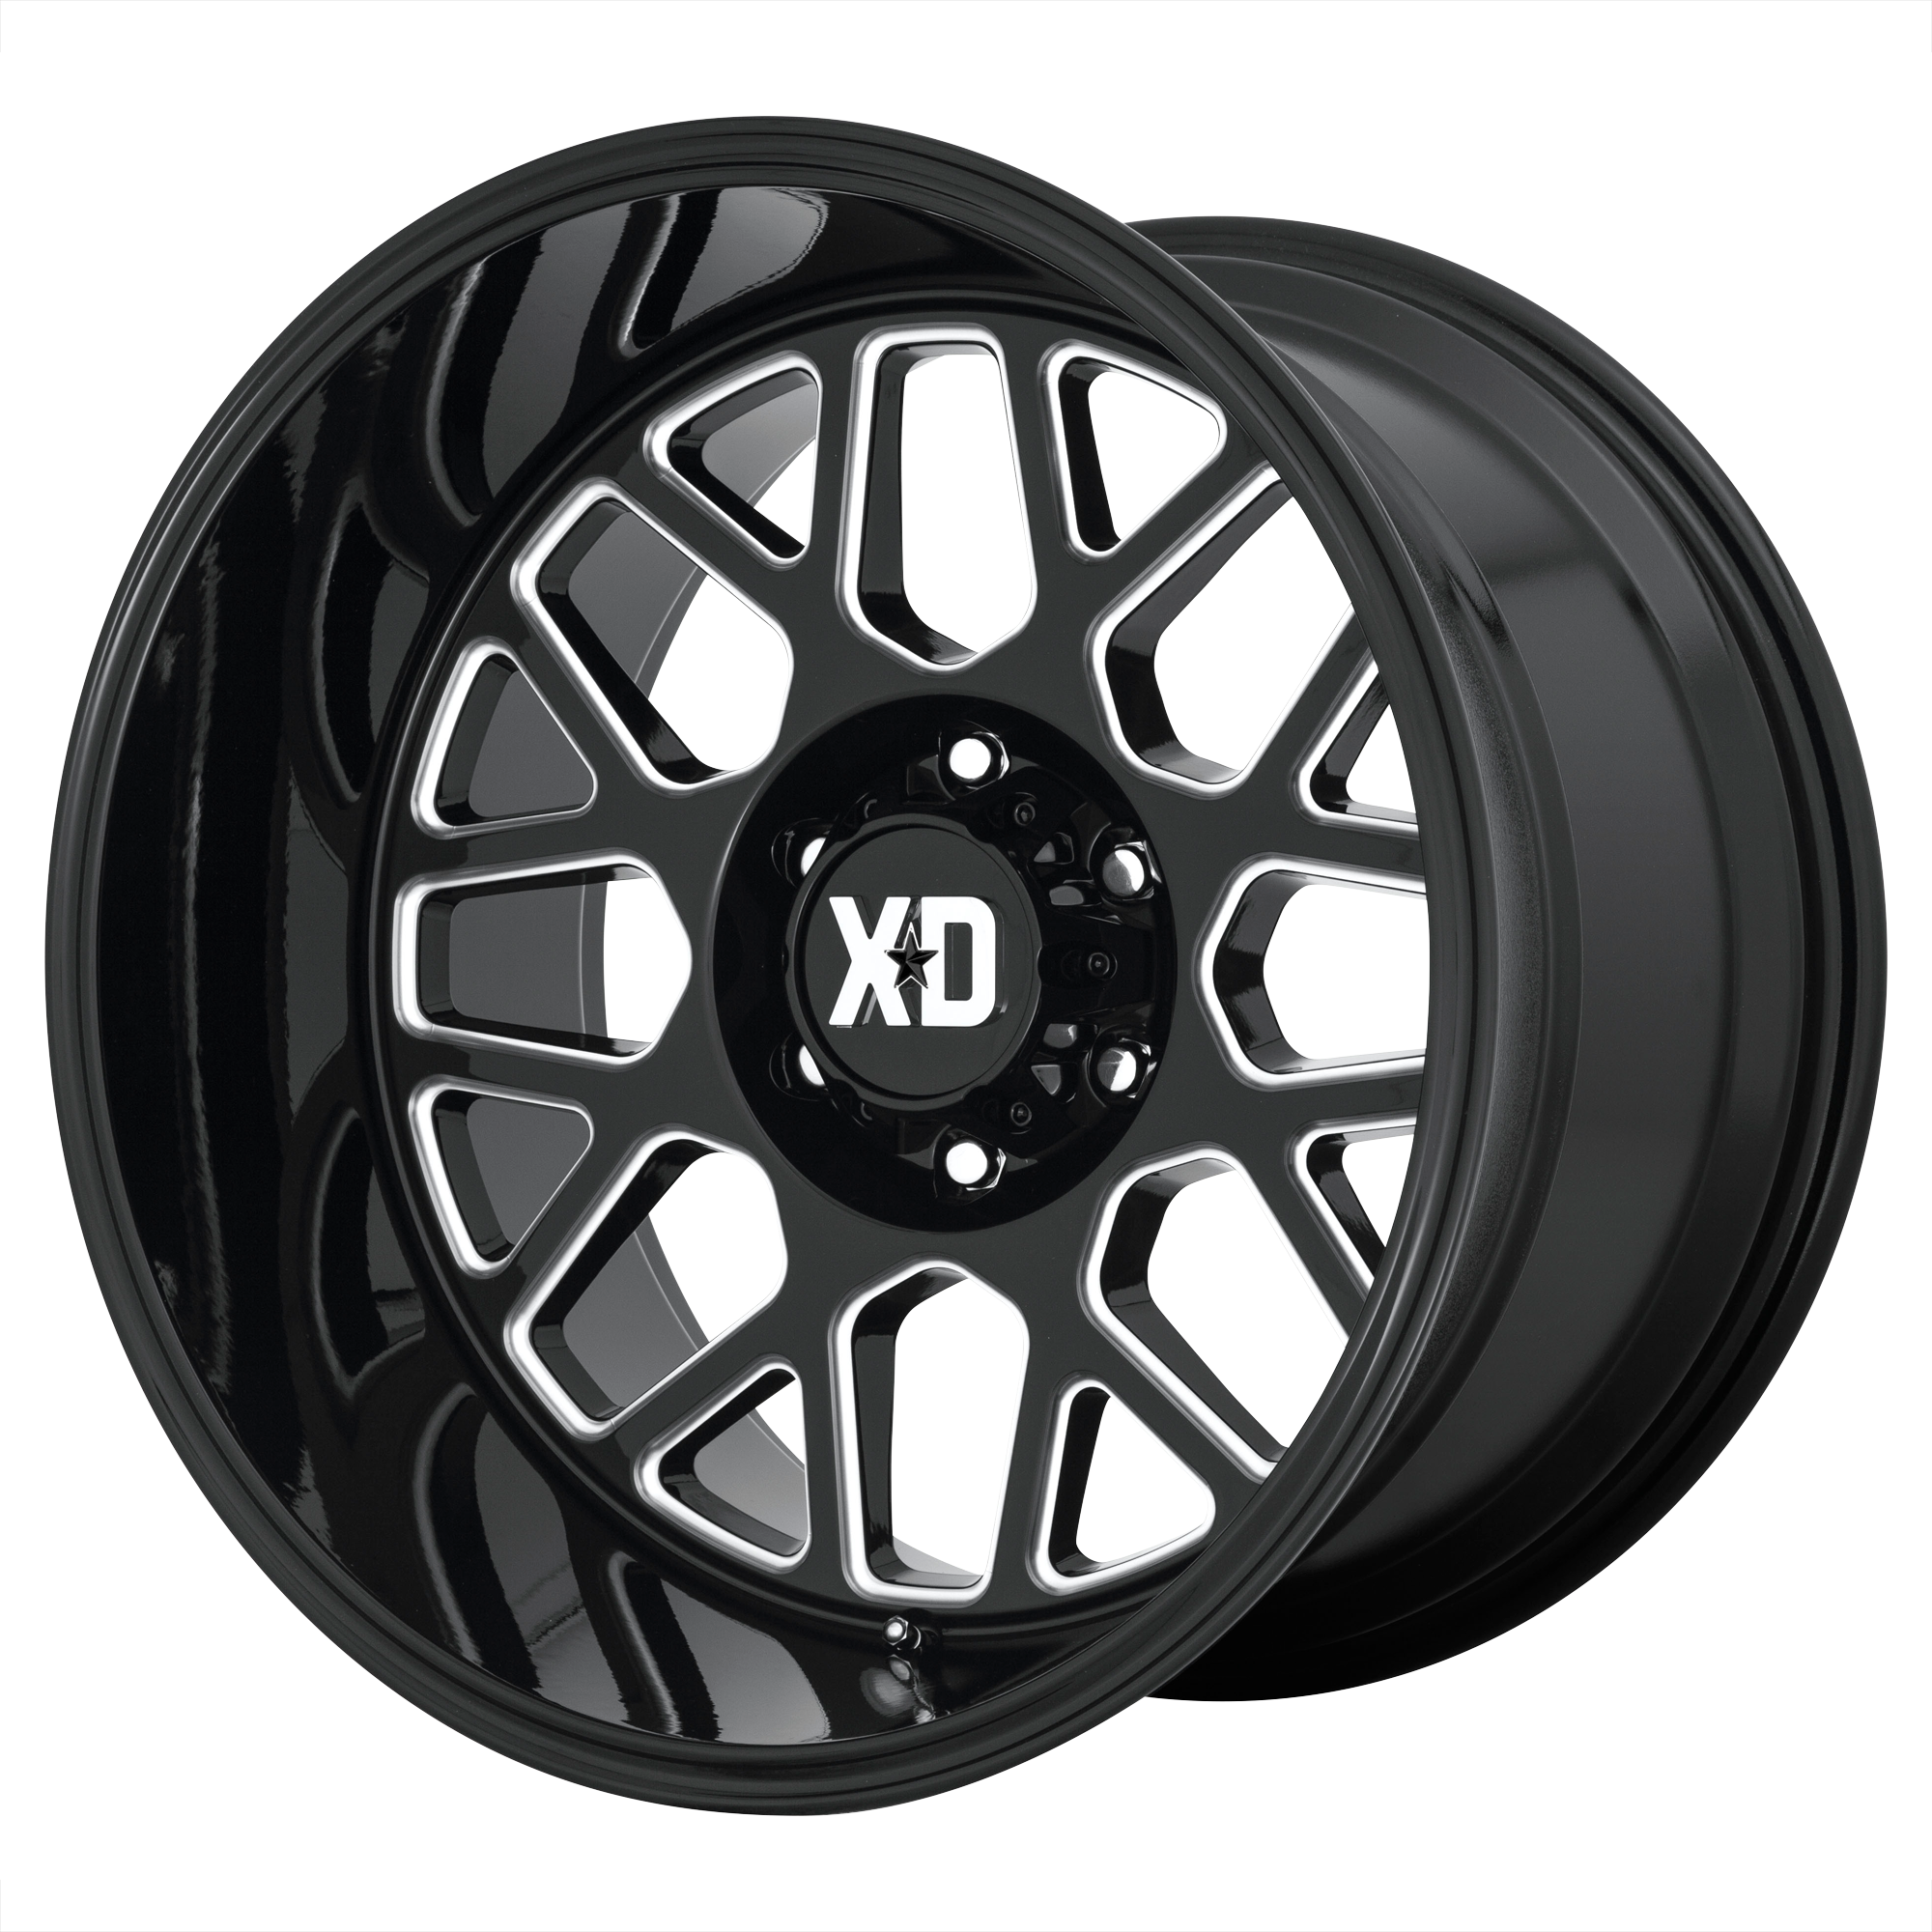 XD 20"x12" Non-Chrome Gloss Black Milled Custom Wheel ARSWCWXD84921268344N